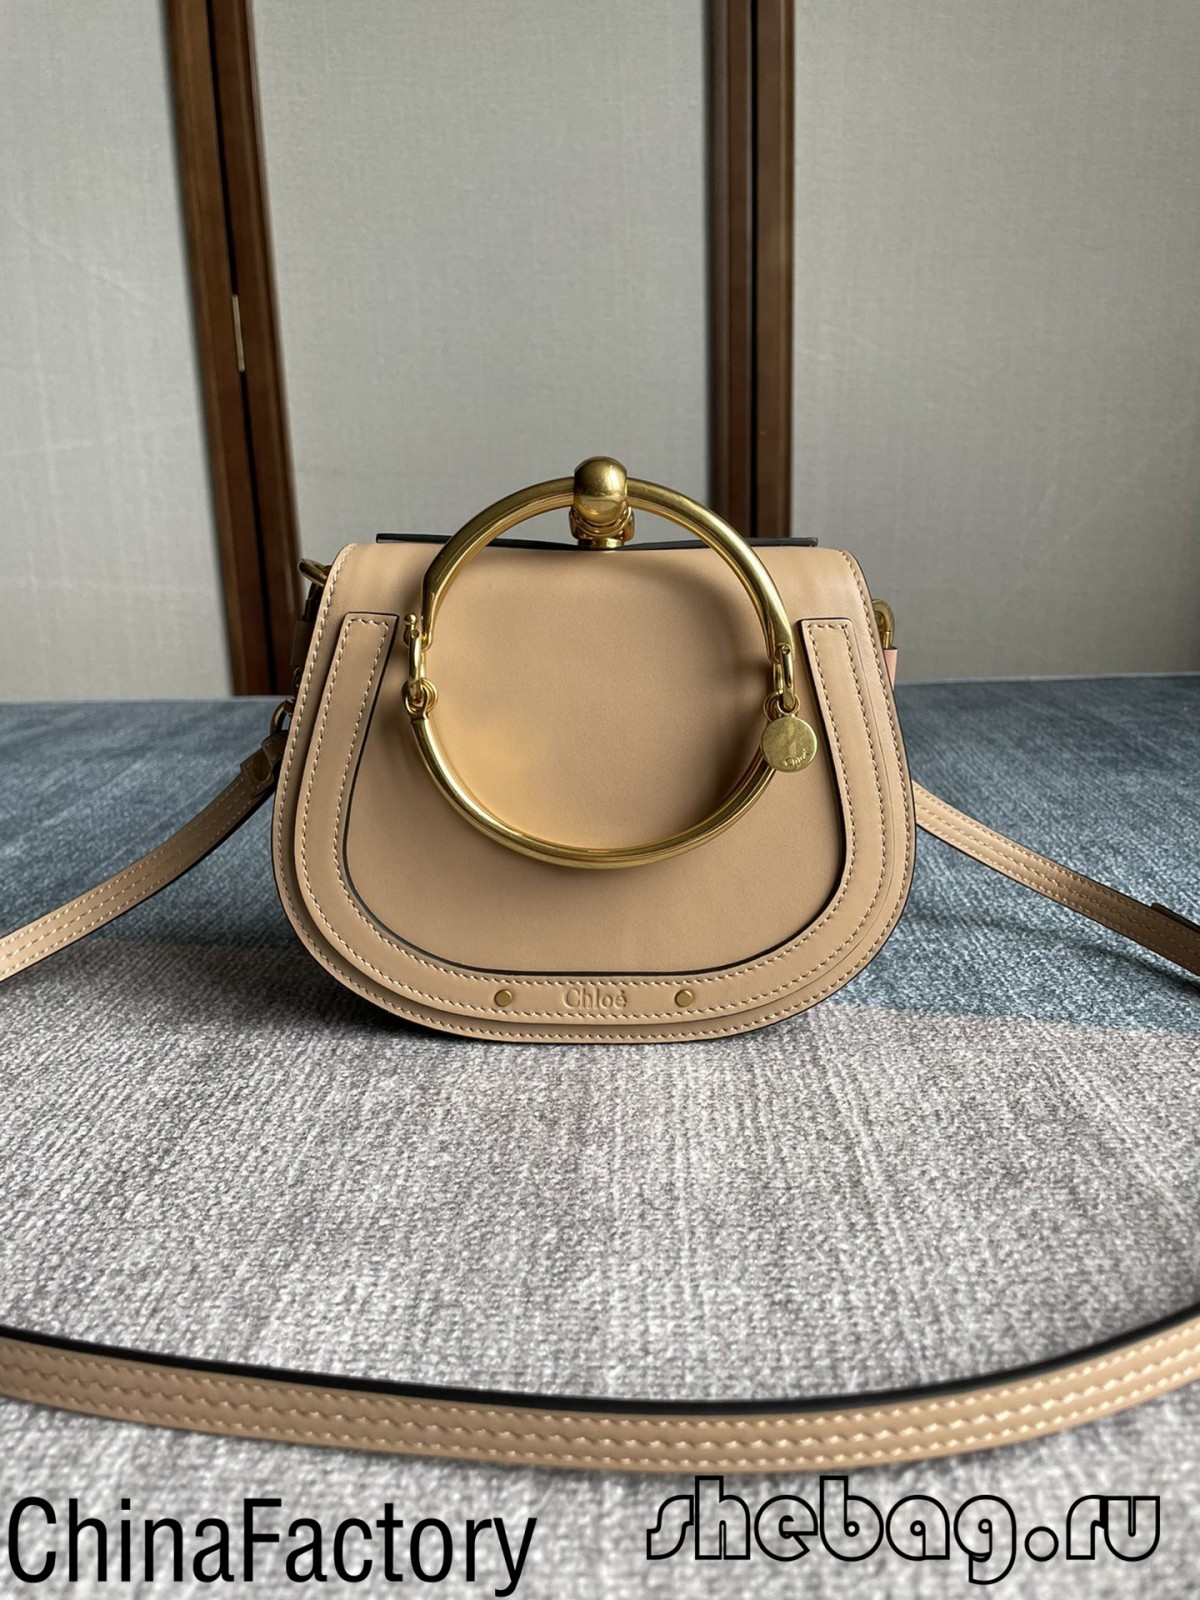 Best quality Chloe nile bag replica factory in China (2022 Hottest)-ఉత్తమ నాణ్యత నకిలీ లూయిస్ విట్టన్ బ్యాగ్ ఆన్‌లైన్ స్టోర్, రెప్లికా డిజైనర్ బ్యాగ్ రు